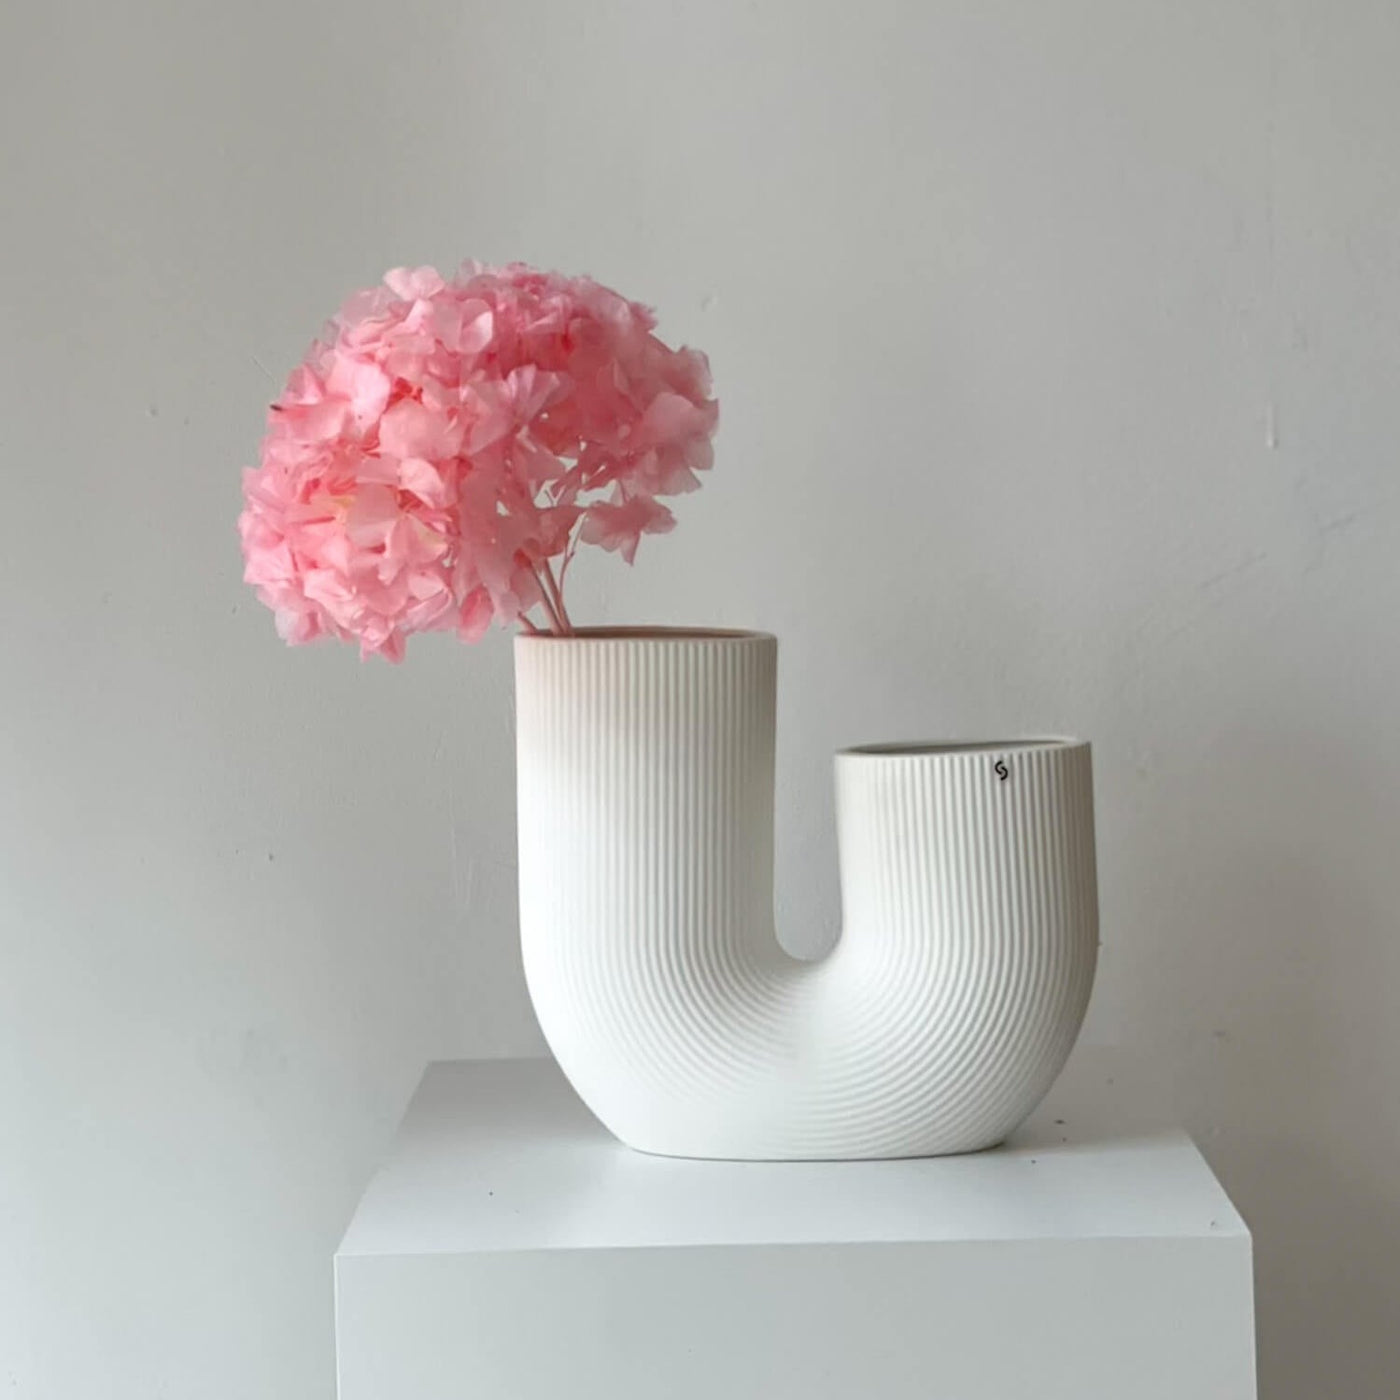 Hortensien konserviert | viele Farben | tolle Blüte | 30-40 cm - Farbe: pink